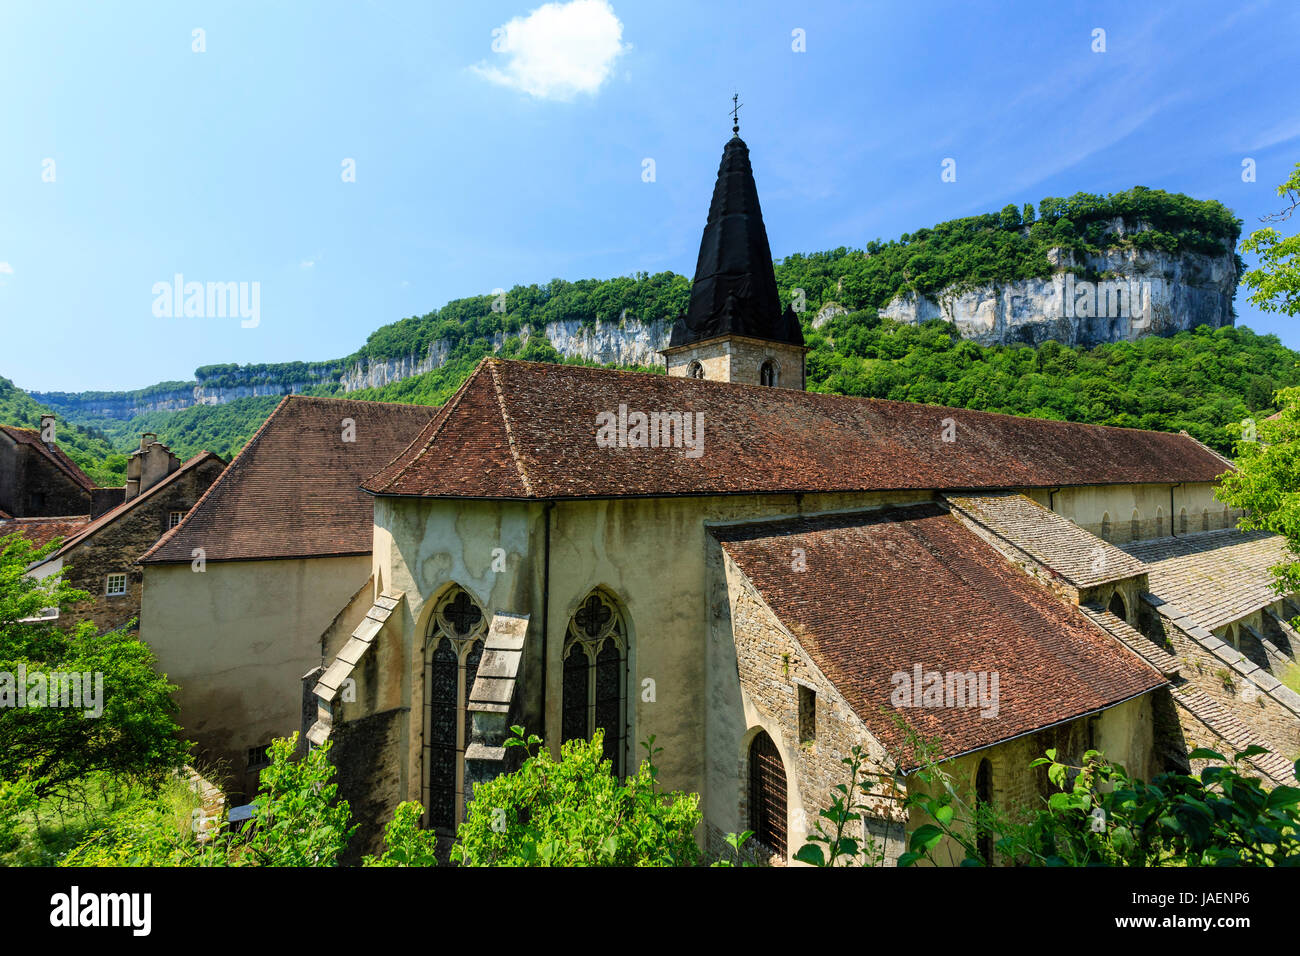 France, Jura, Baume les Messieurs, labelled Les Plus Beaux Villages de France (The Most beautiful Villages of France), abbey church Stock Photo